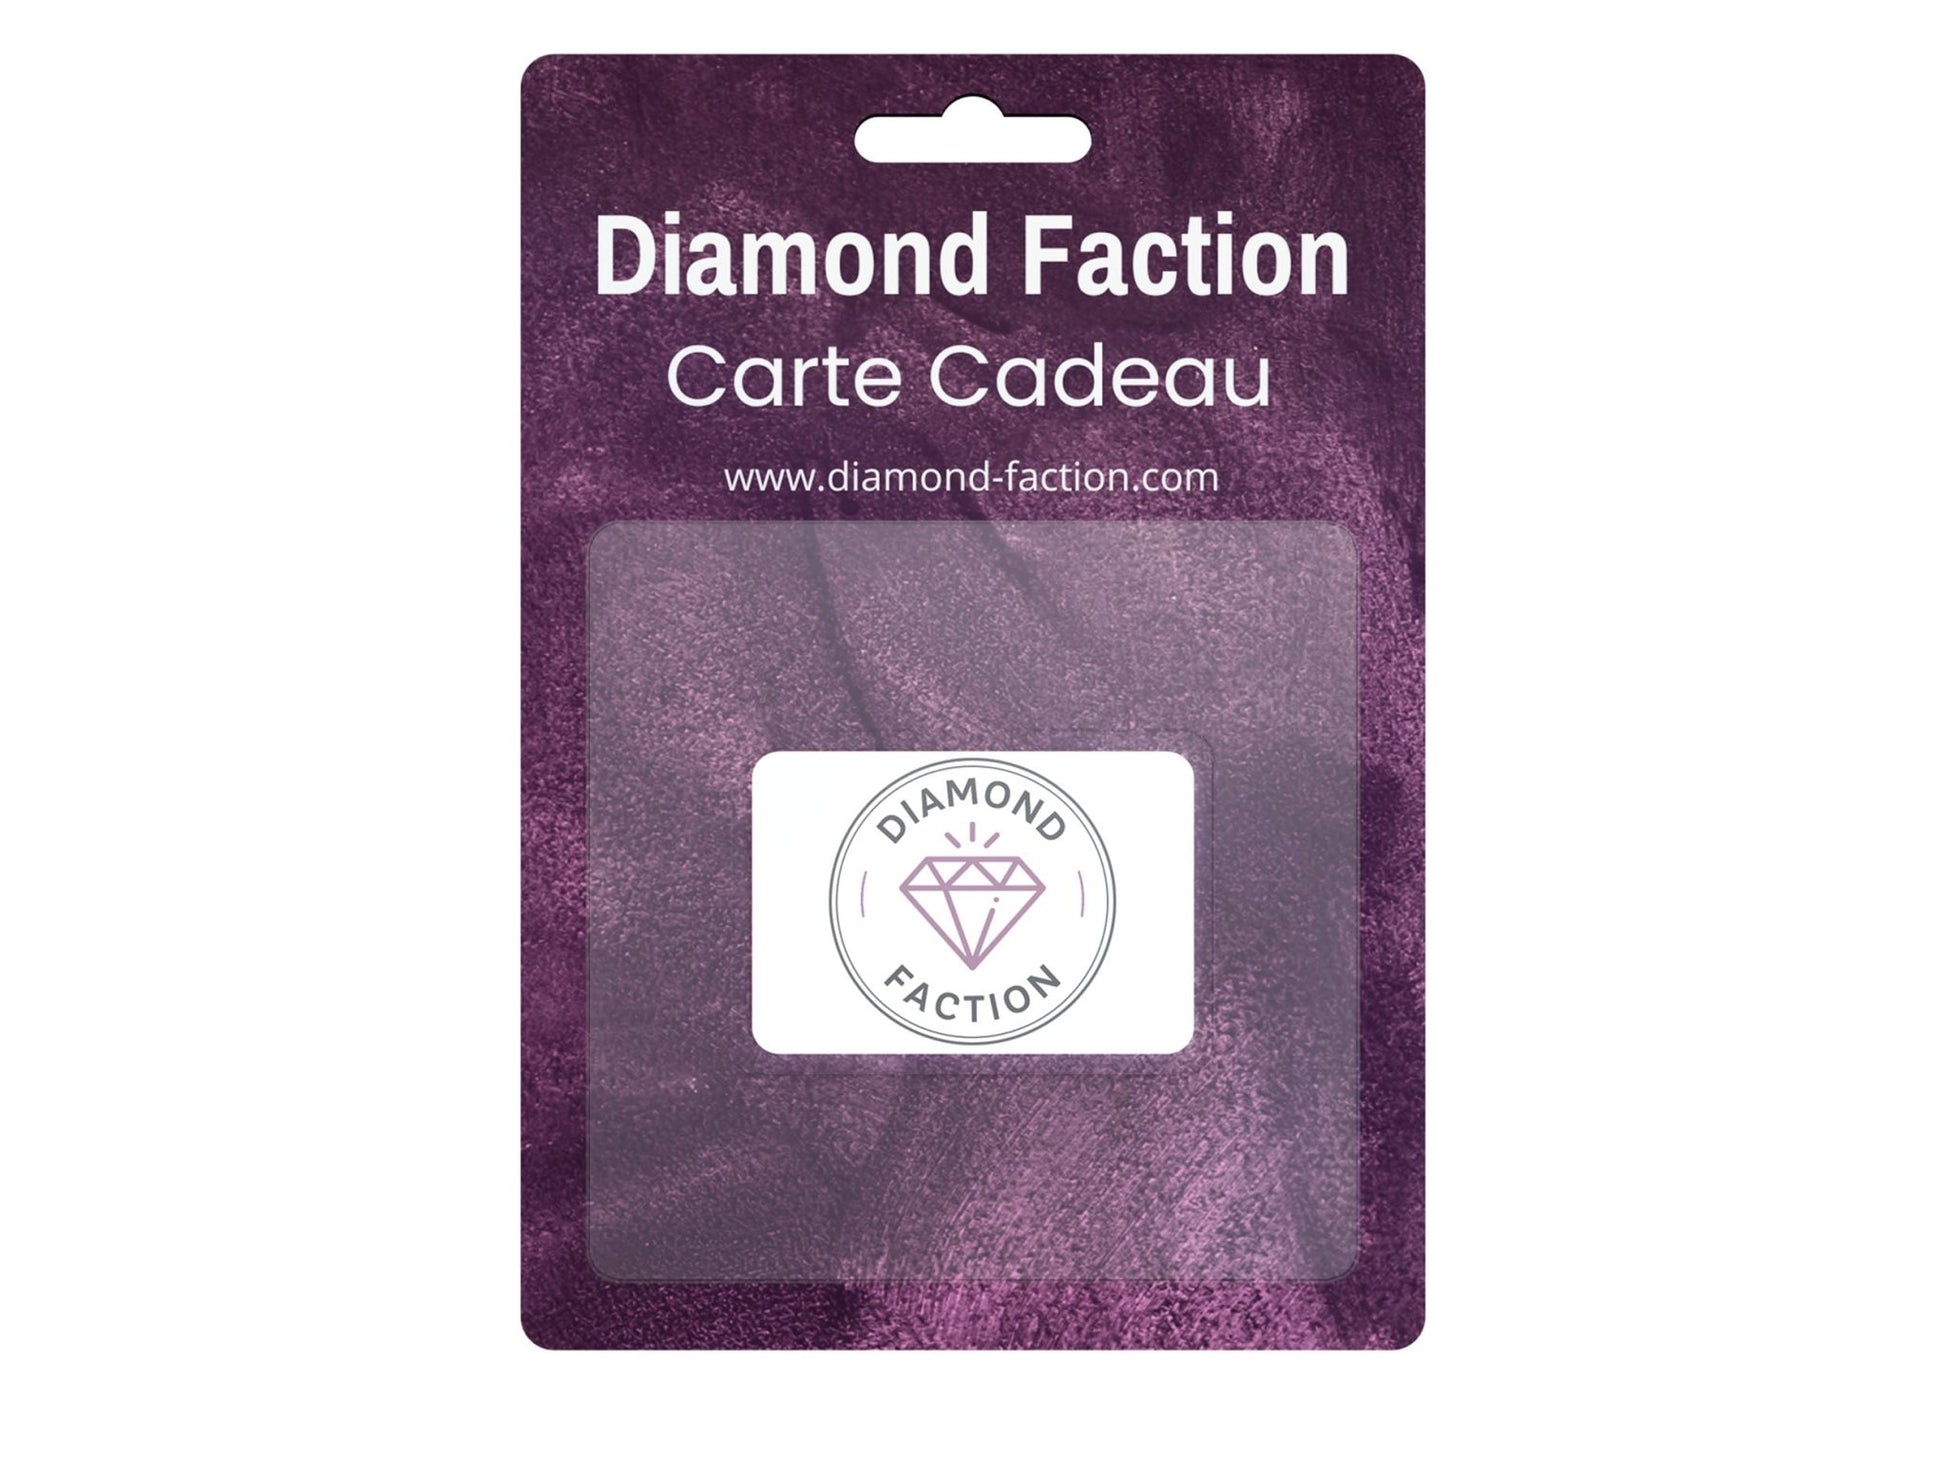 Carte Cadeau Diamond Faction - Diamond Faction